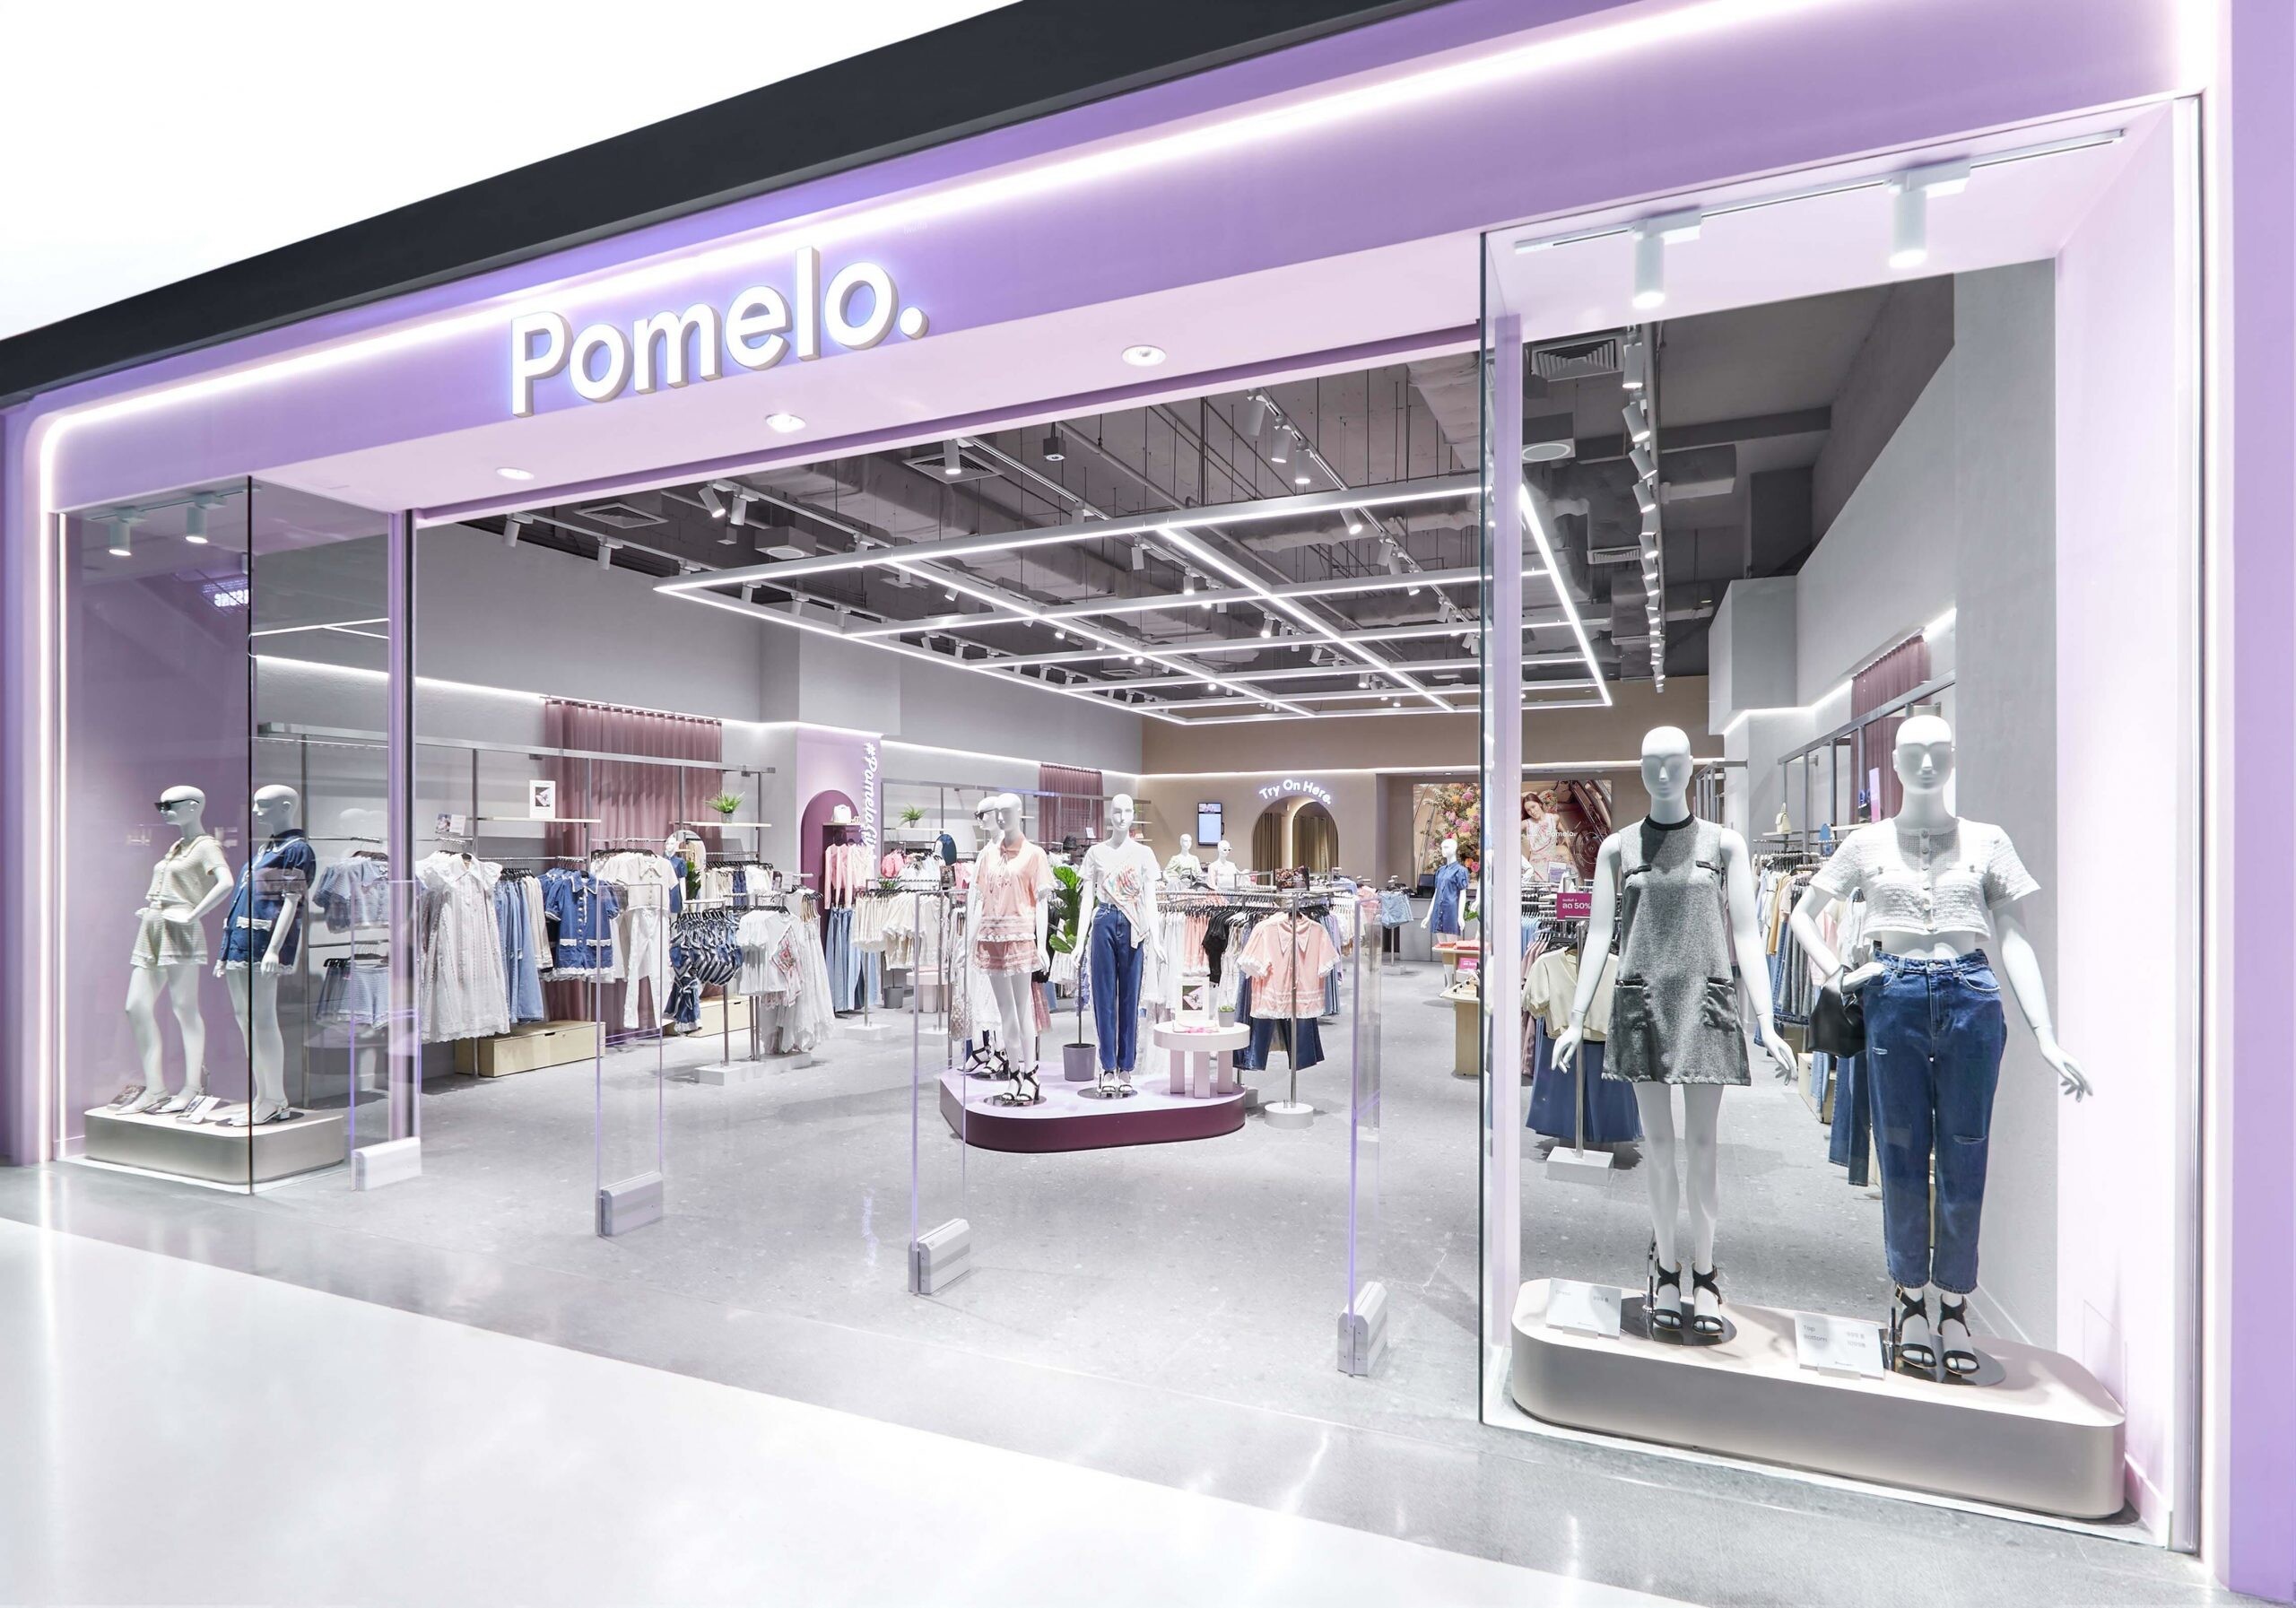 Pomelo เปิดหน้าร้านสาขาใหม่ Central Plaza Westgate มุ่งหน้ายกระดับธุรกิจค้าปลีก และเข้าถึงลูกค้ากลุ่มใหม่โซนตะวันตก